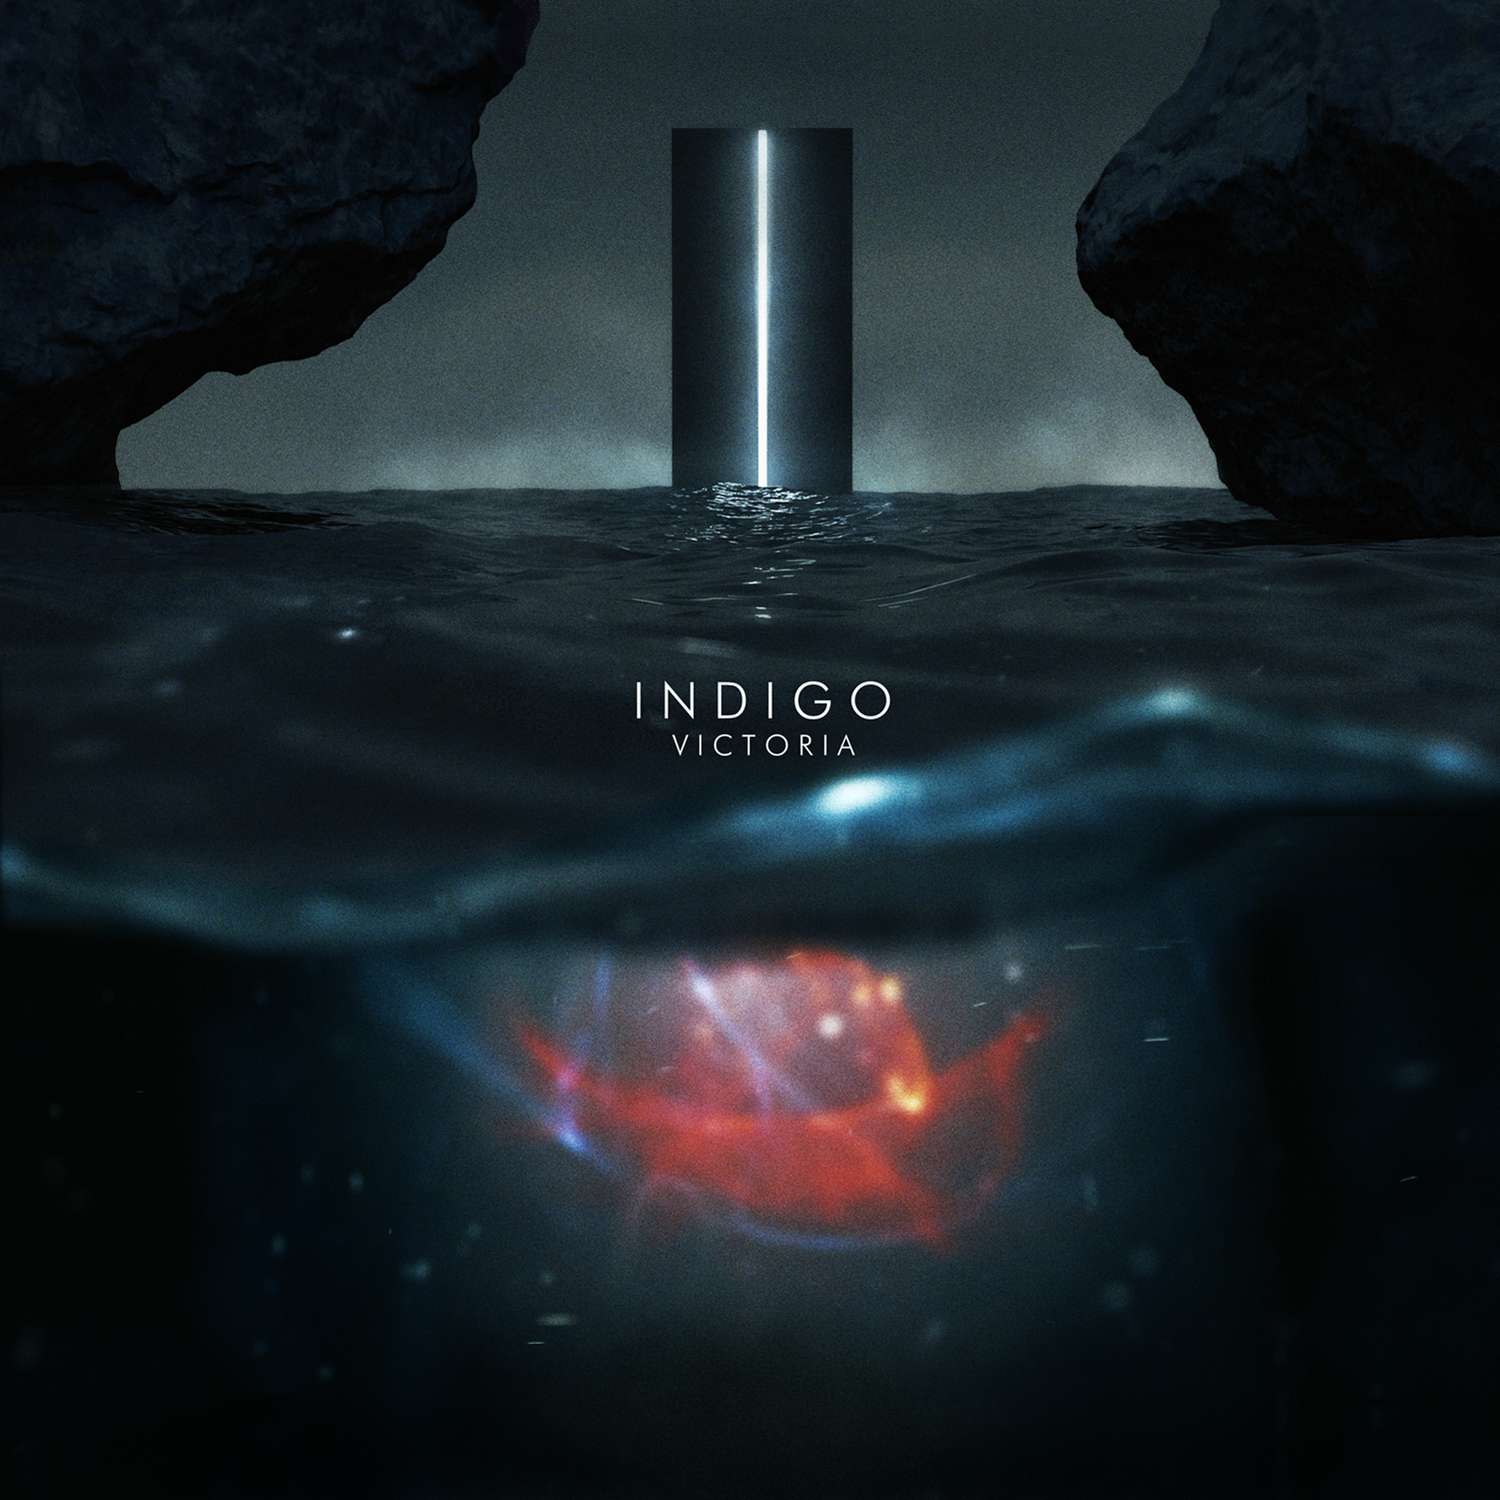 Novo iz FM Jama: Indigo objavio svoj prvi album Victoria